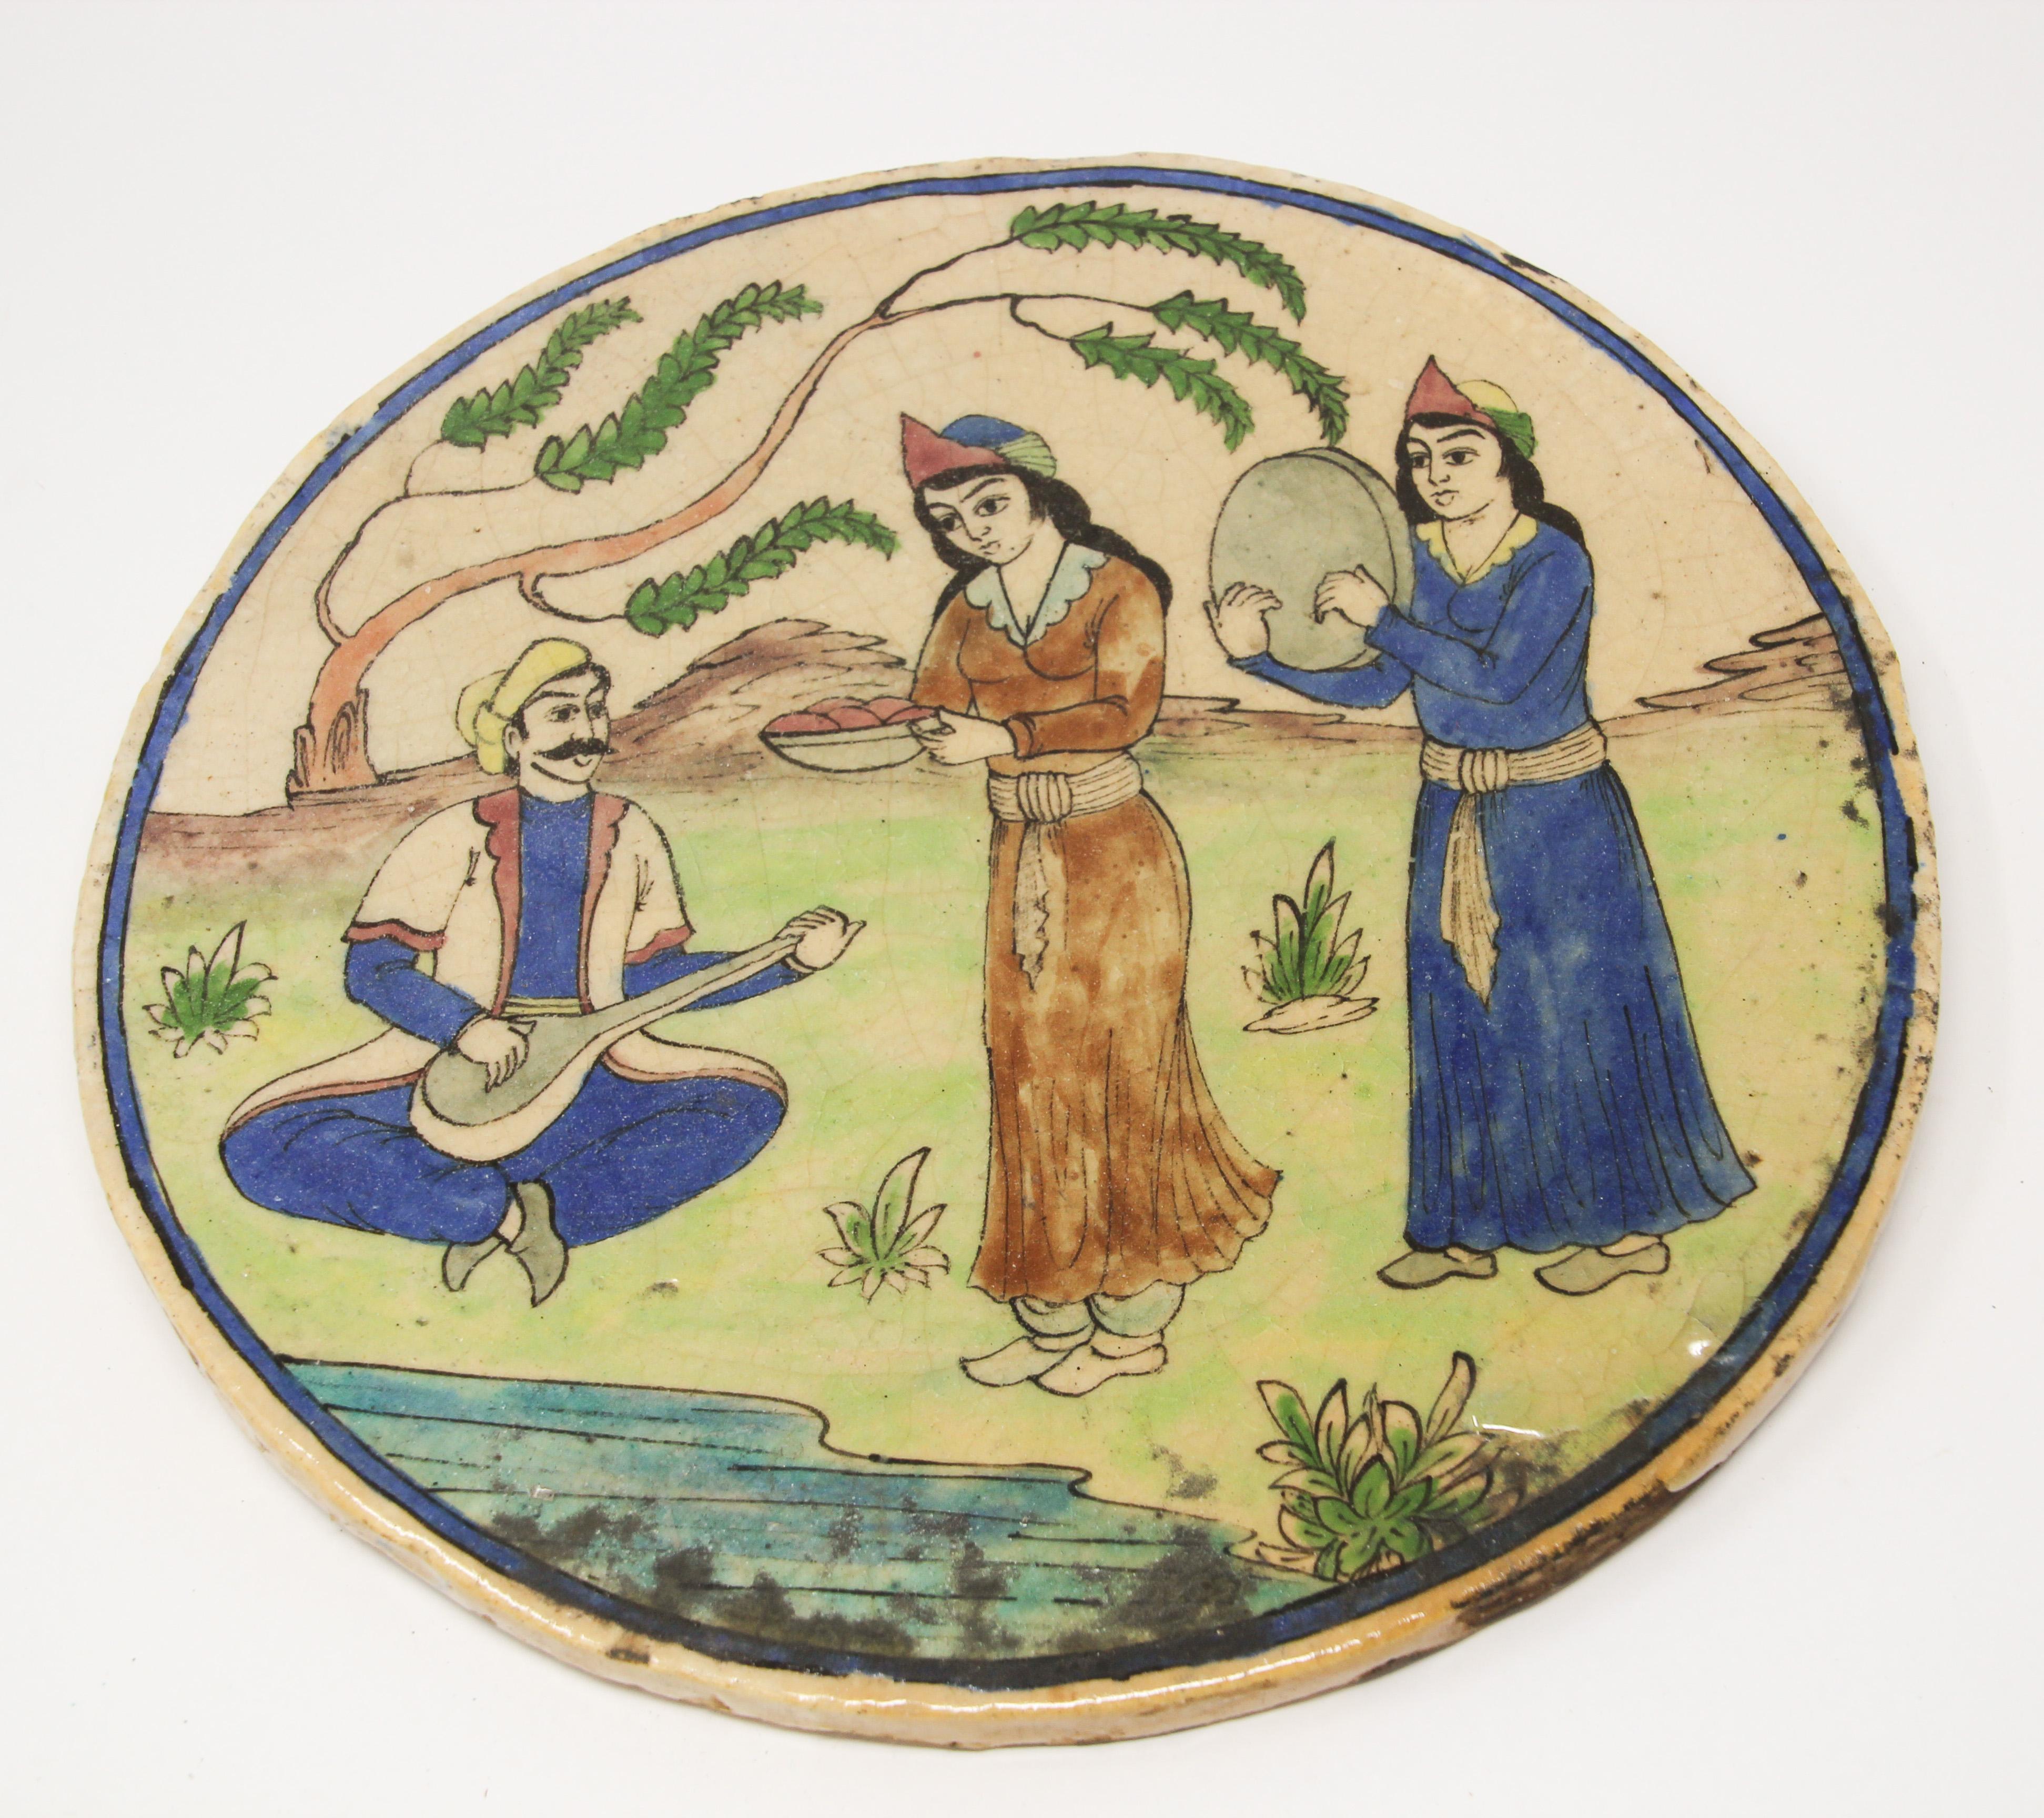 Antike Qajar-nahöstliche islamische Fliesentafel.
Glasierte maurische Keramikfliese, die eine Szene im Freien mit Musikern und Frauen darstellt, die Essen servieren und tanzen.
Schöne maurische türkische handgefertigte dekorative runde Crackle